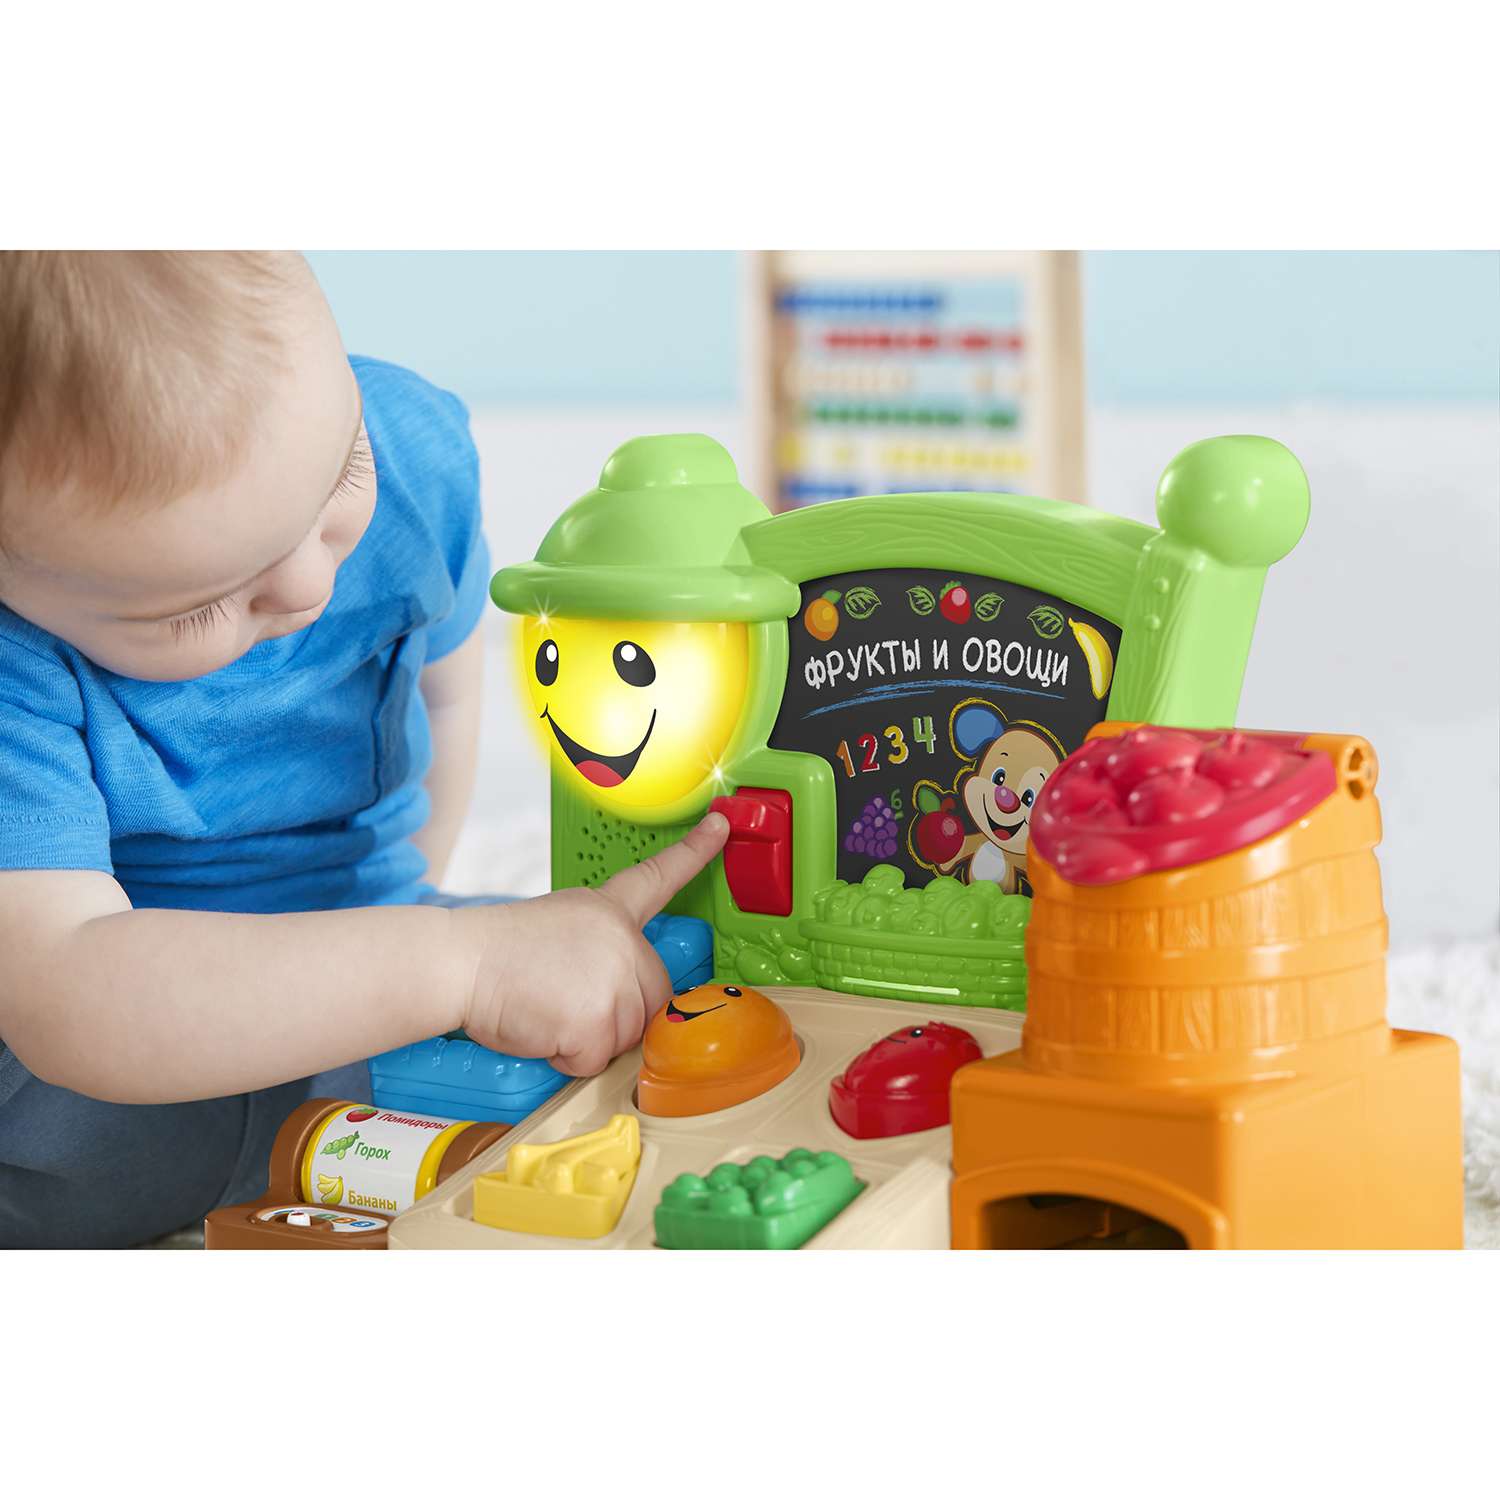 Развивающая игрушка Fisher Price Прилавок с фруктами и овощами - фото 9